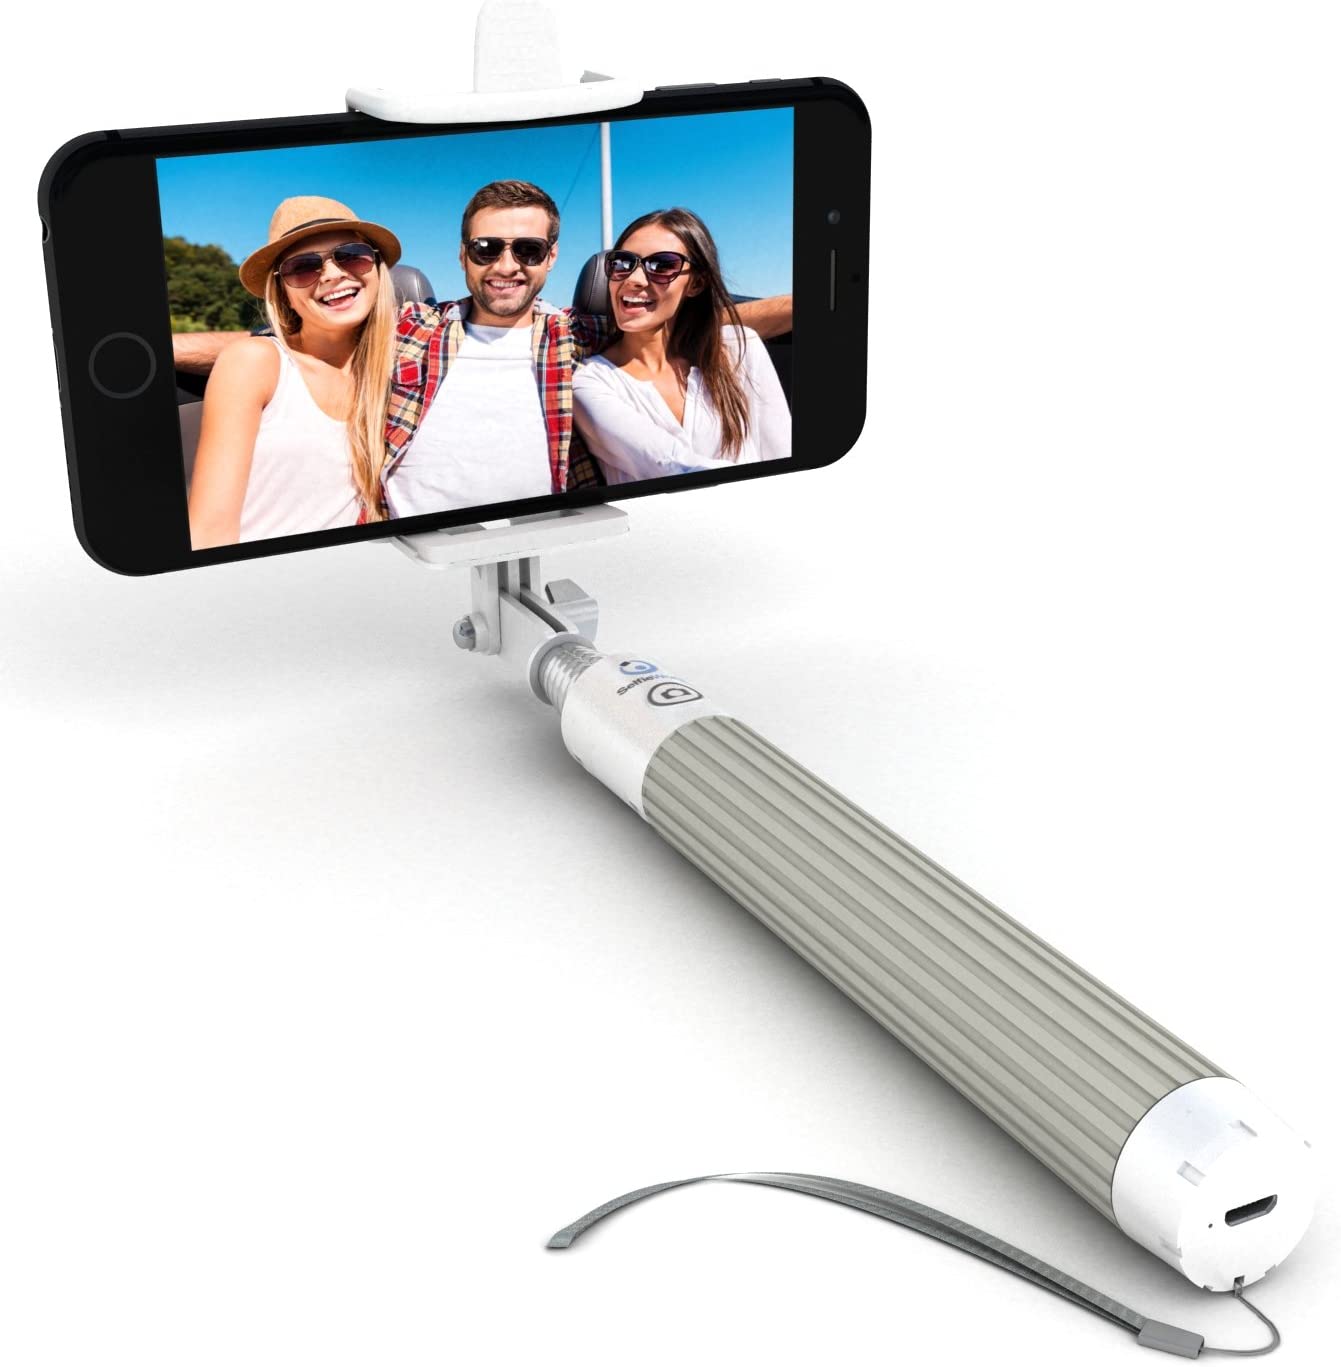 Selfie World Wireless Aerial Selfie Stick, 29-Inch